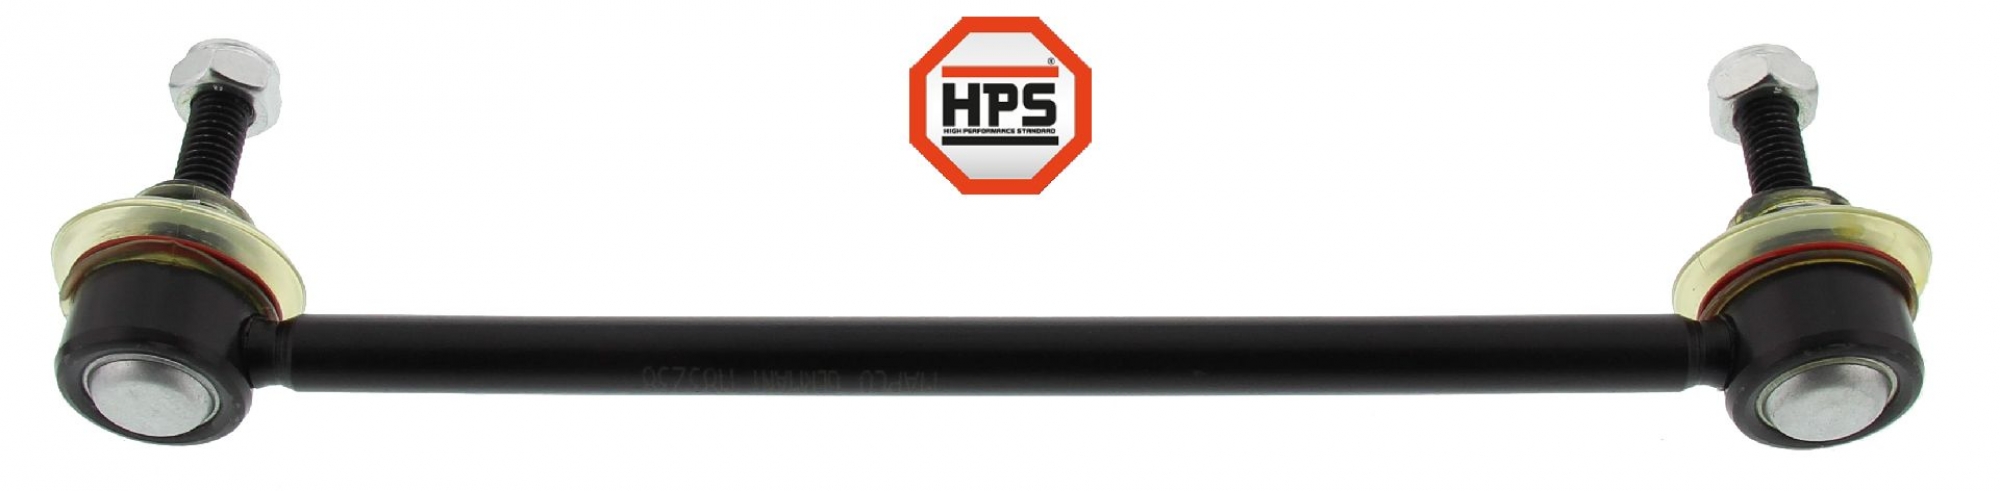 HPS-Koppelstange, verstärkt, HA, FORD MONDEO III, MONDEO III